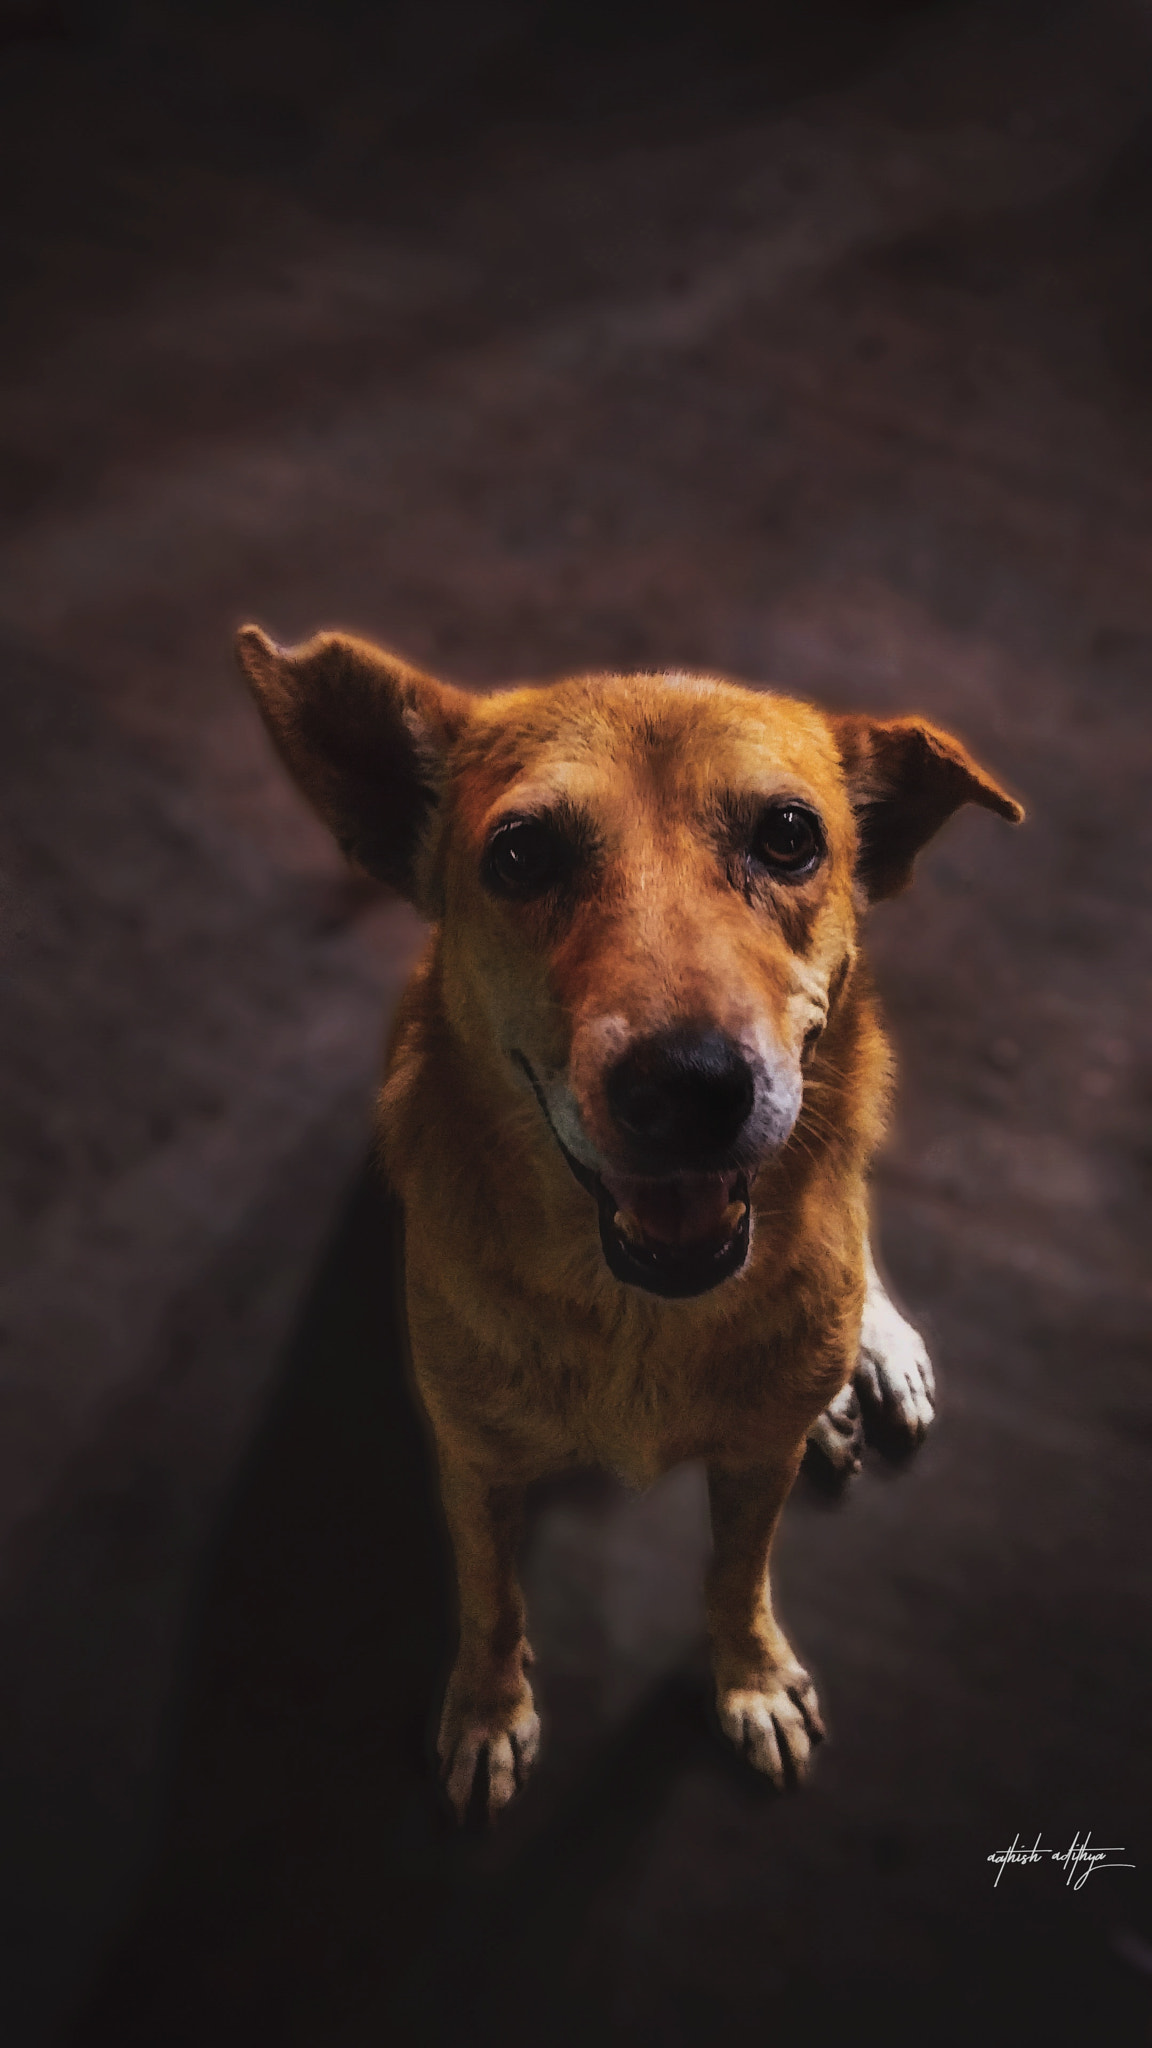 OnePlus 2 sample photo. Dog photography